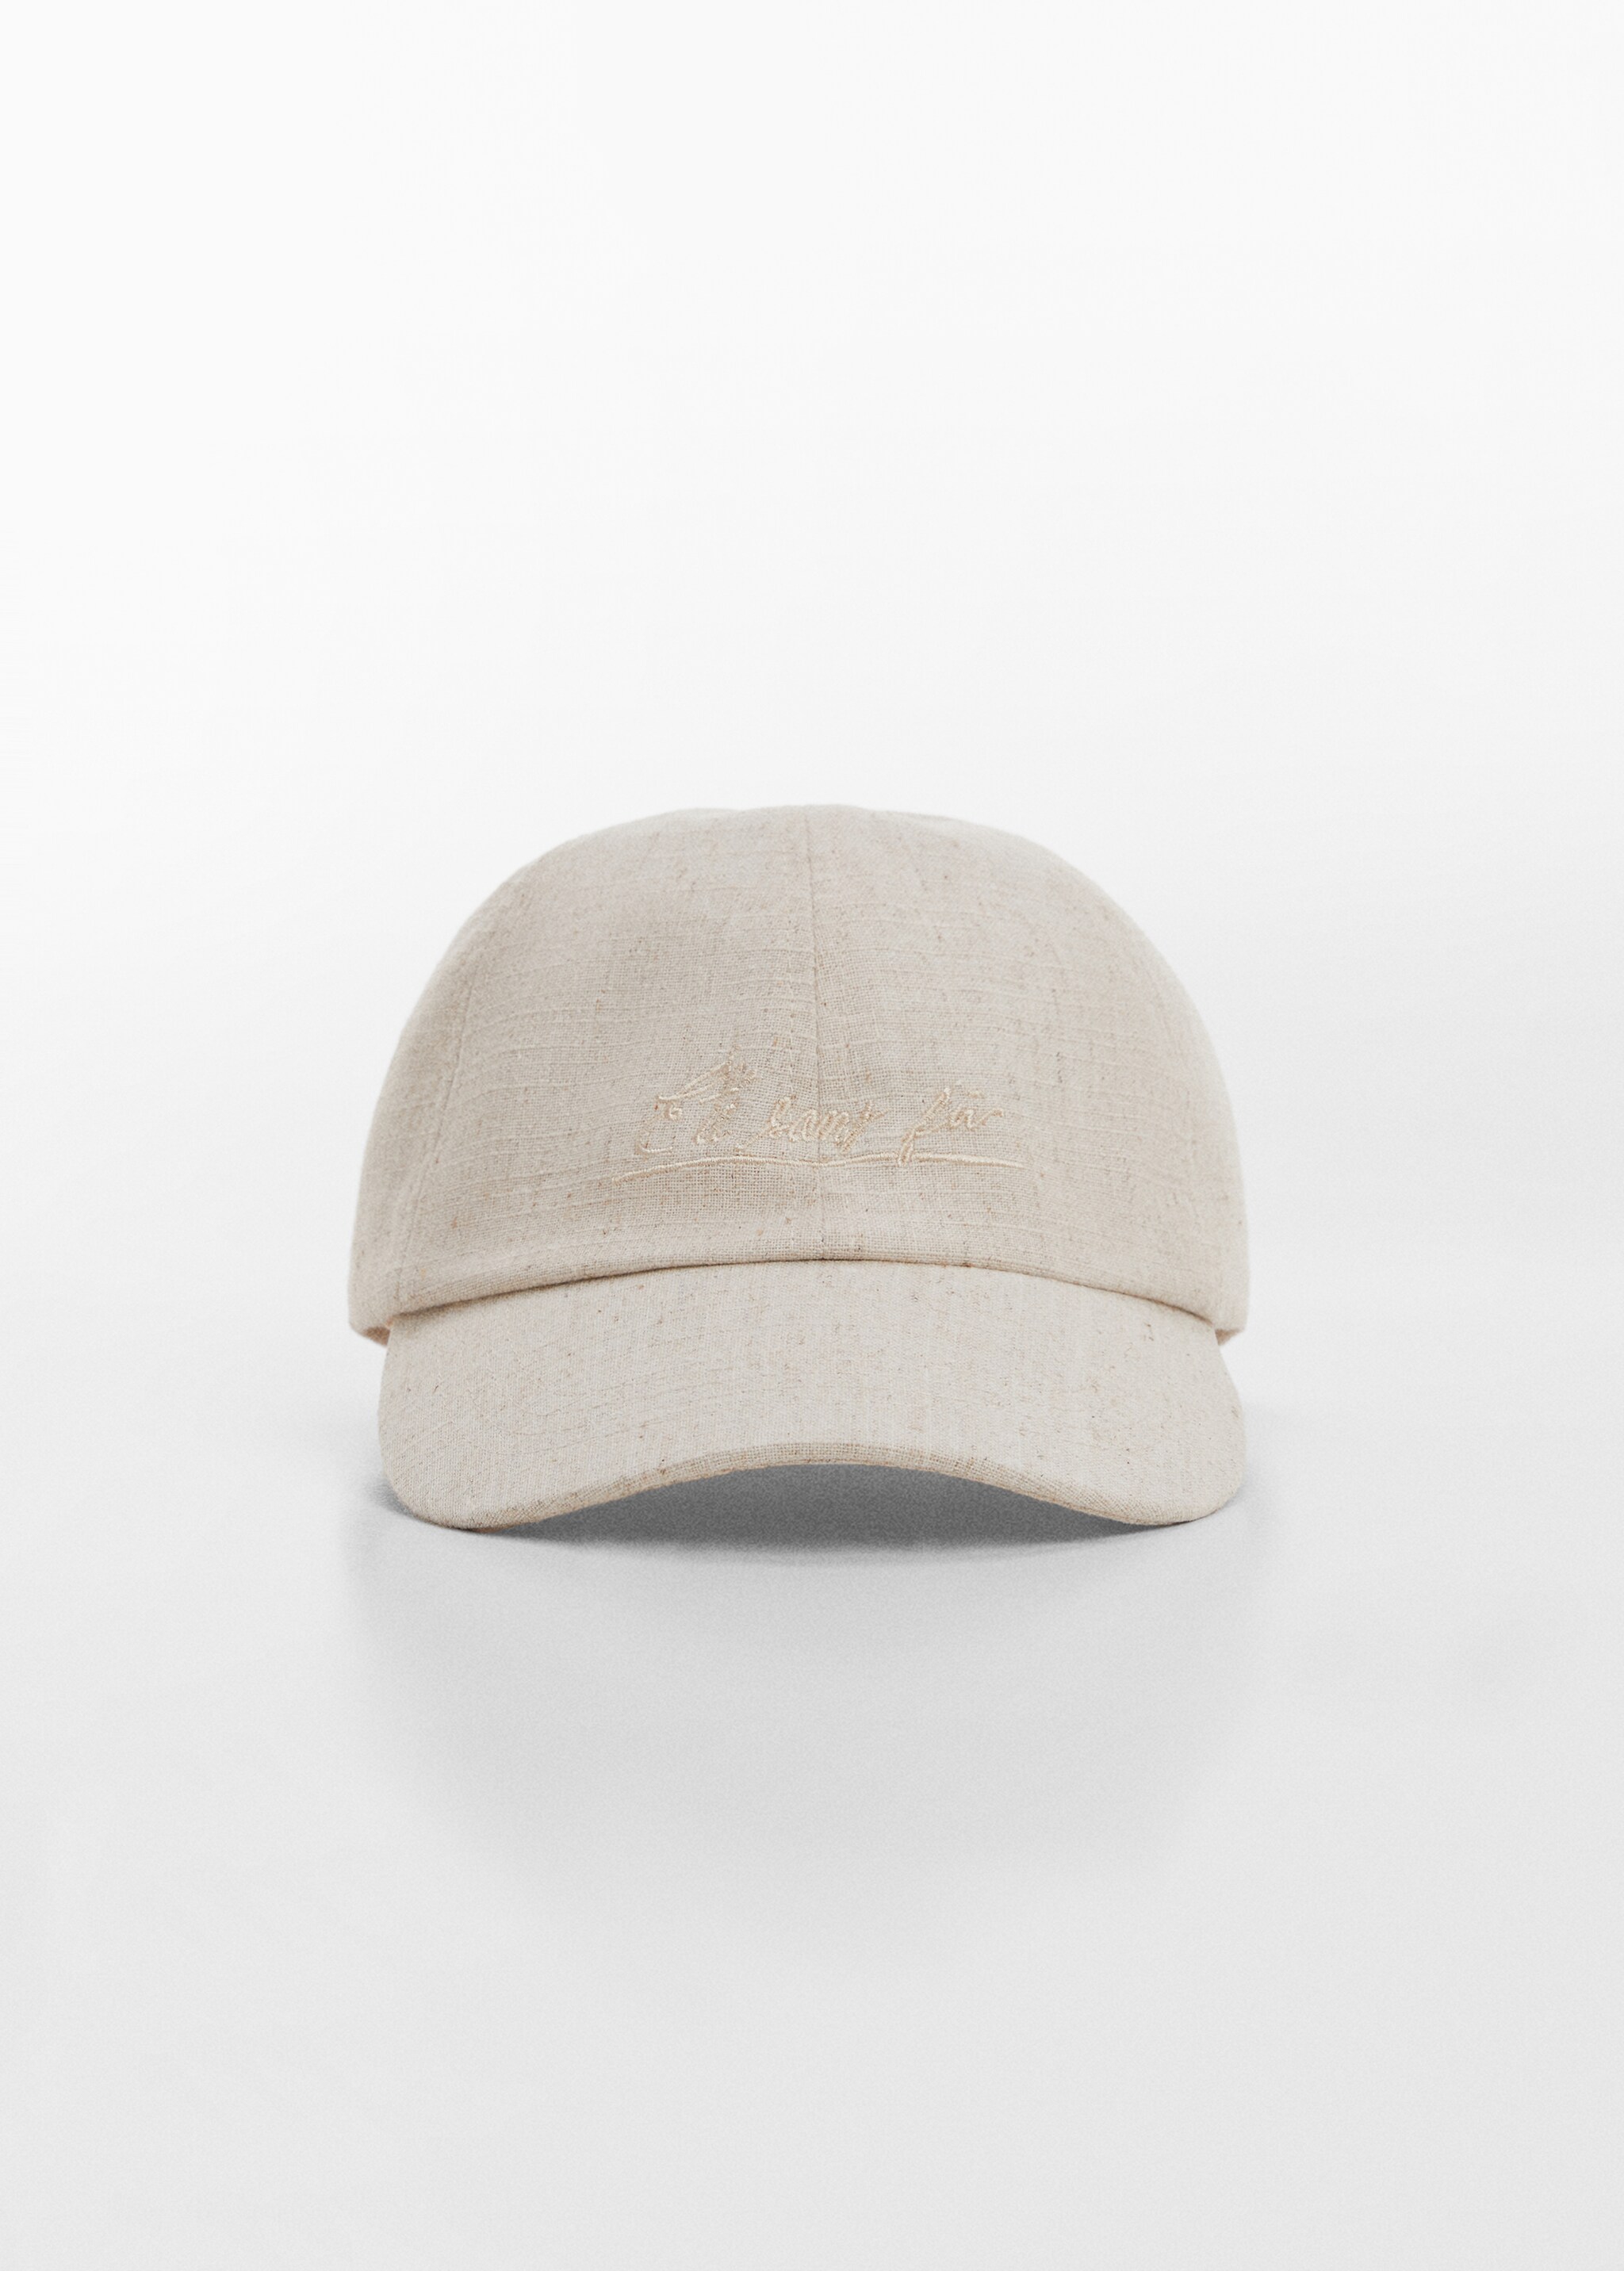 Embroidered cotton visor cap - Medium plane